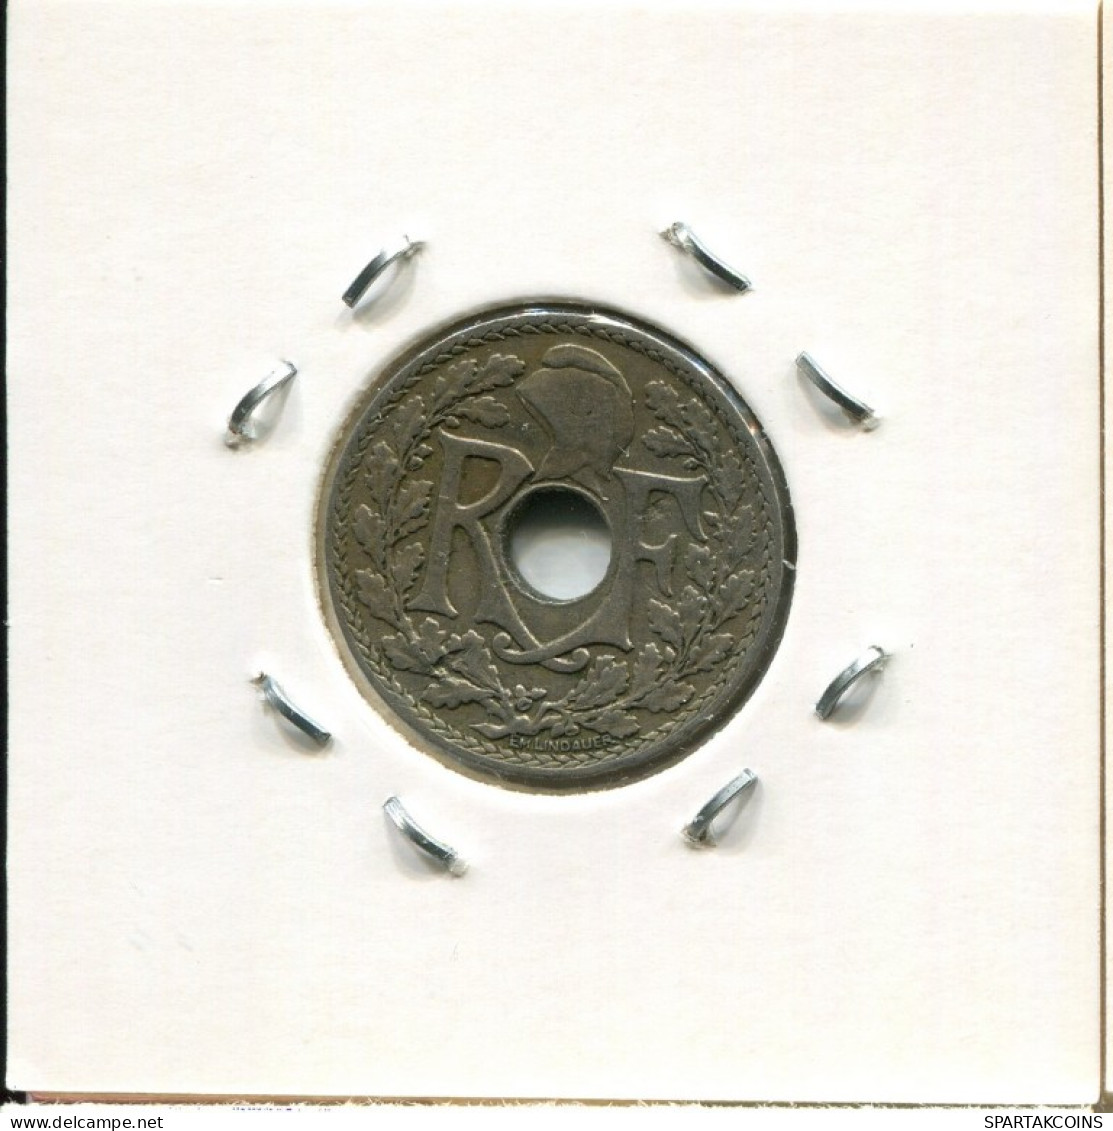 10 CENTIMES 1926 FRANCIA FRANCE Moneda #AM098.E.A - 10 Centimes